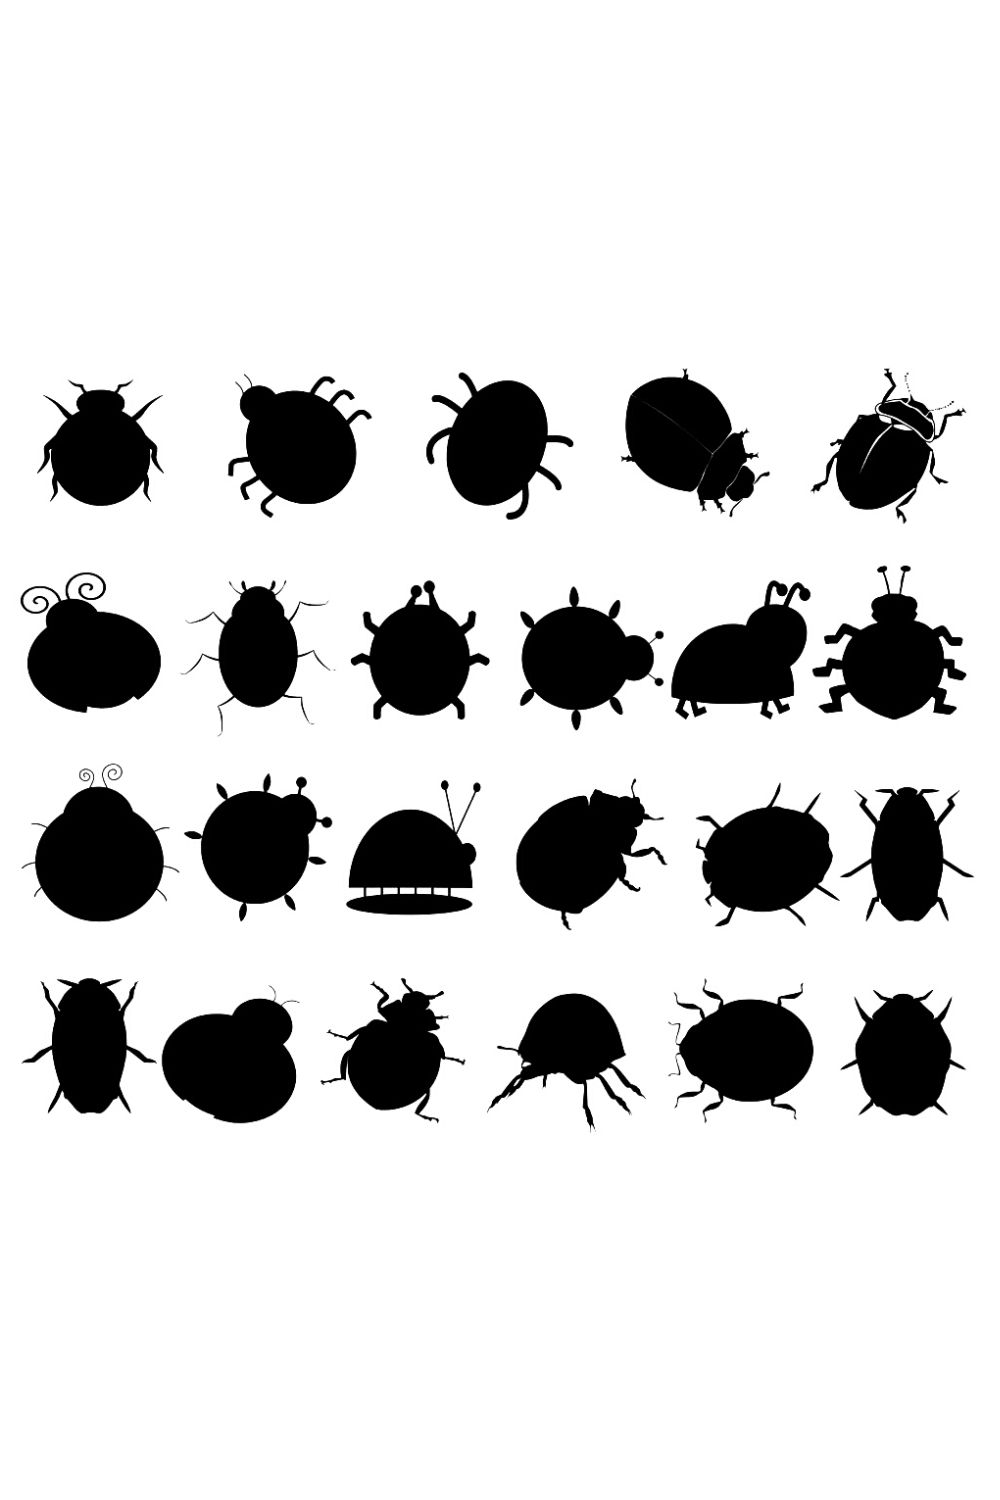 Ladybug Silhouette Bundle Pinterest image.